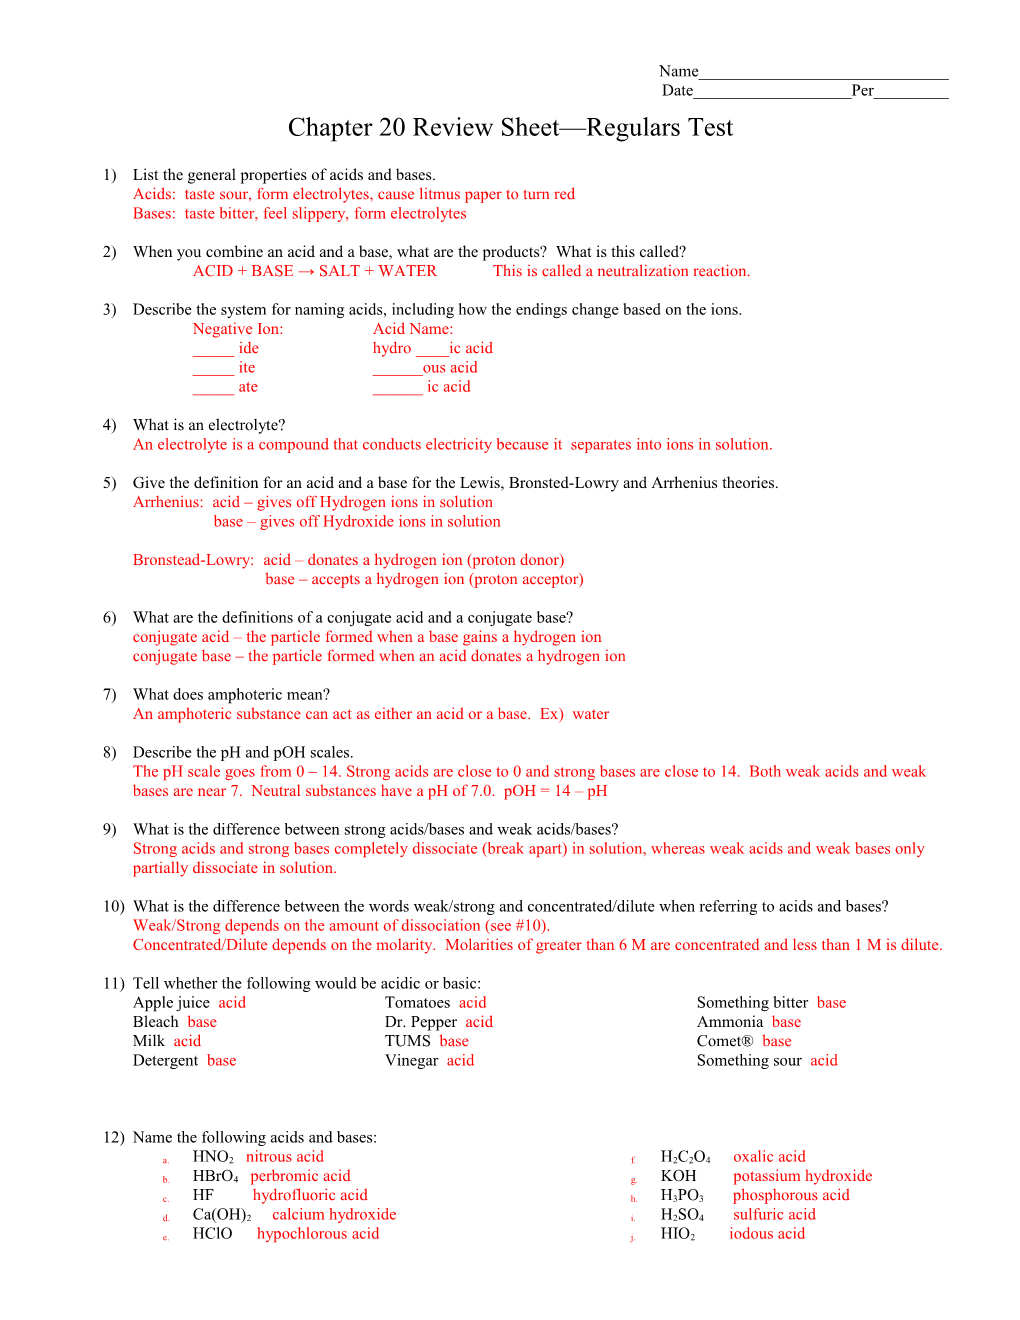 Chapter 20 Review Sheet Regulars Test